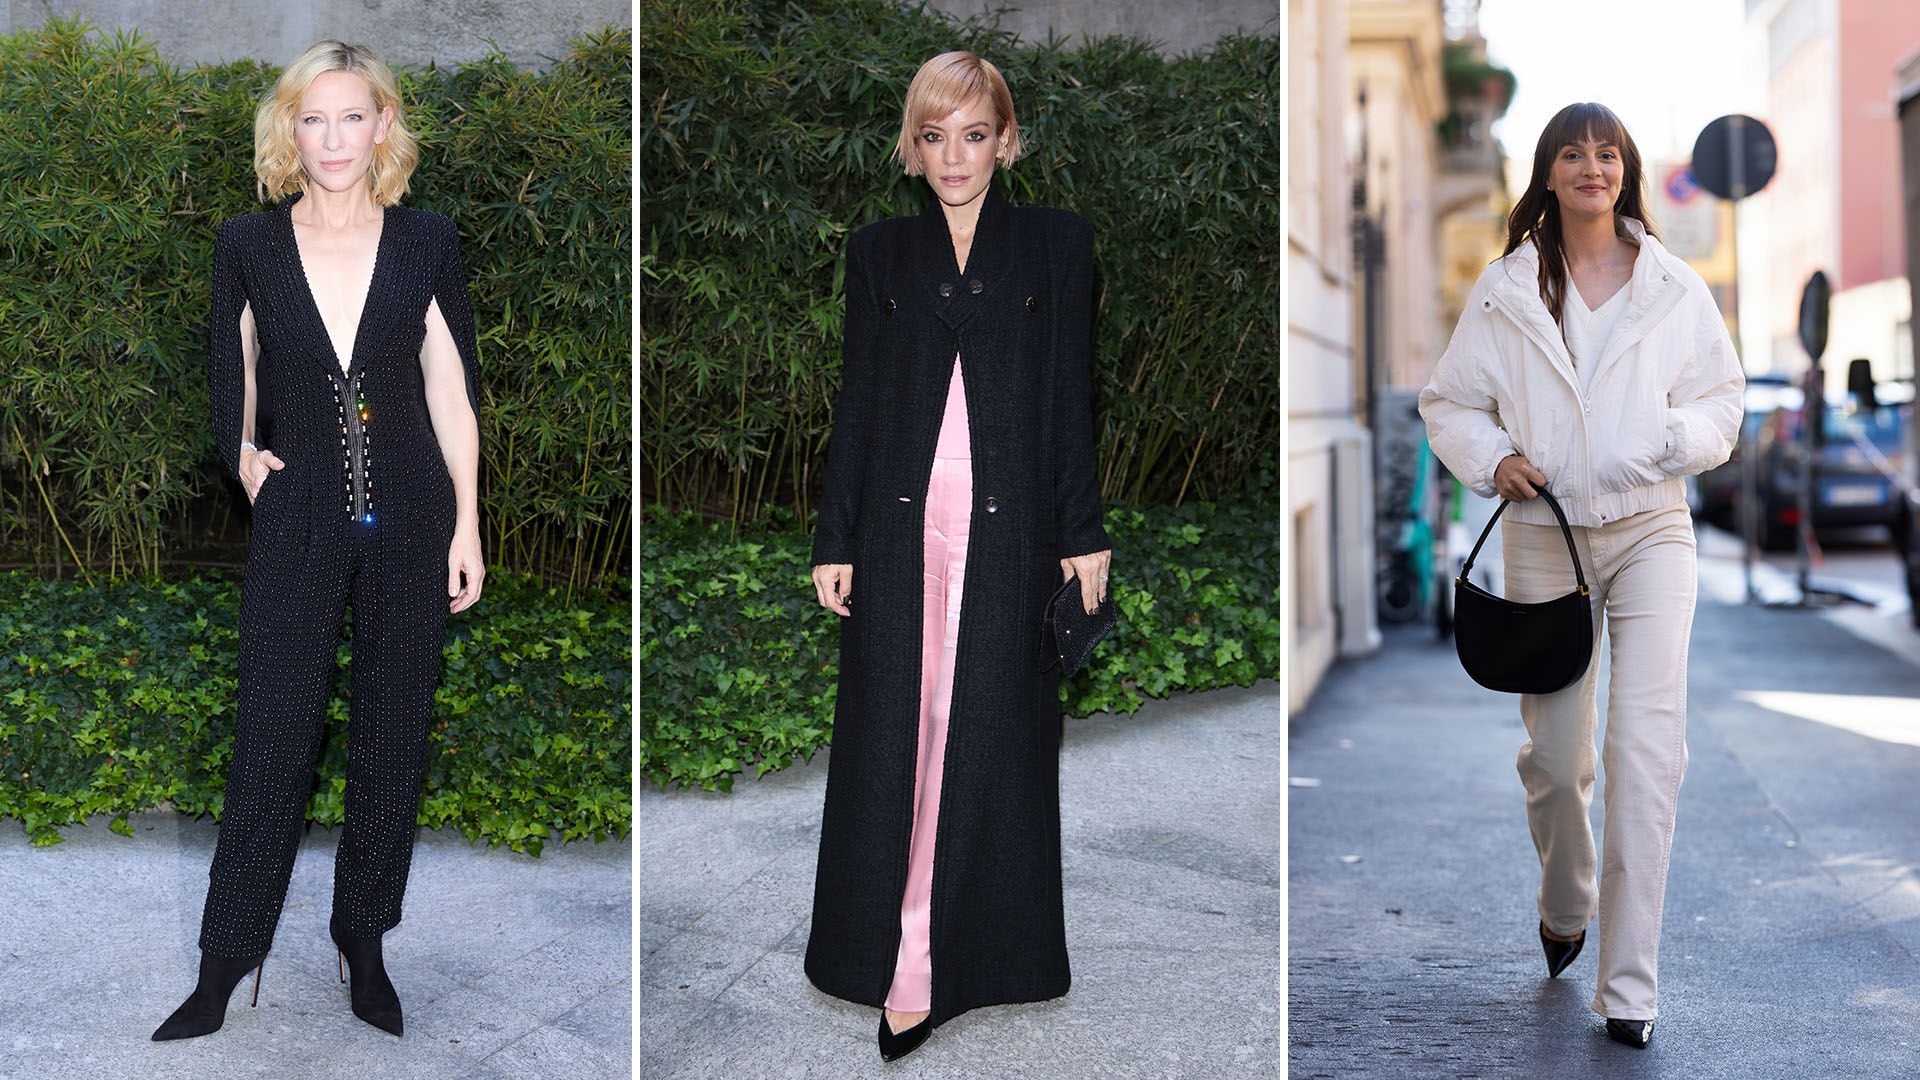 Milan Fashion Week best dressed: Cate Blanchett, Lily Allen, Leighton Meester